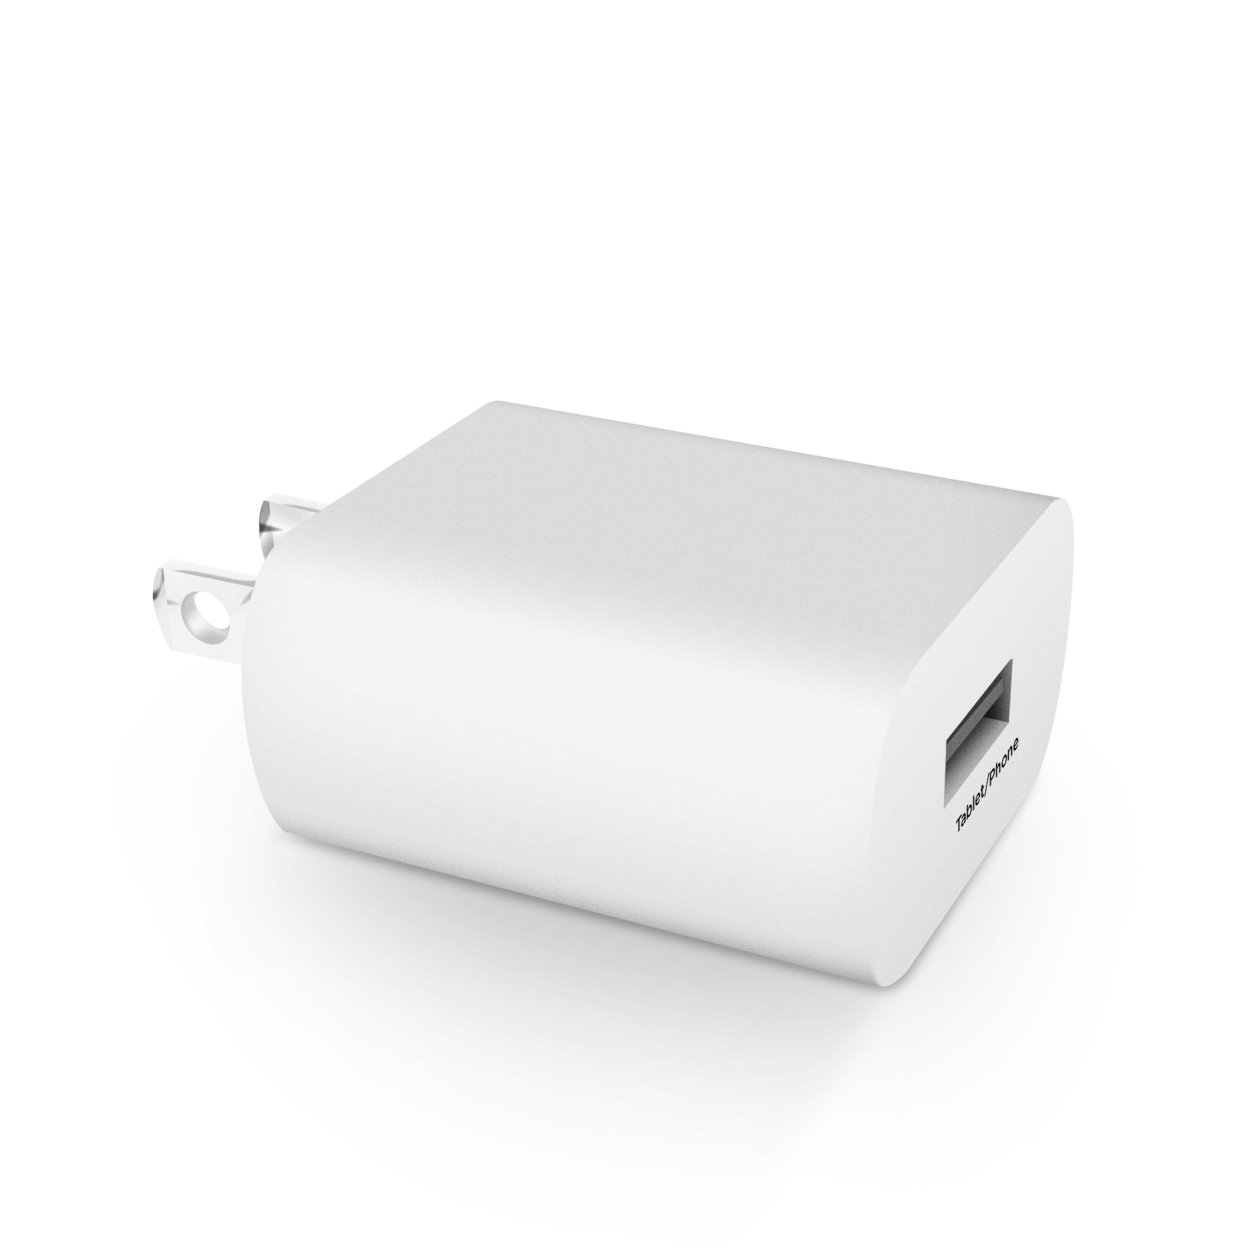 HyperGear Single USB Lightweight Compact Wall Charger 2.4A ETL (15122-HYP)